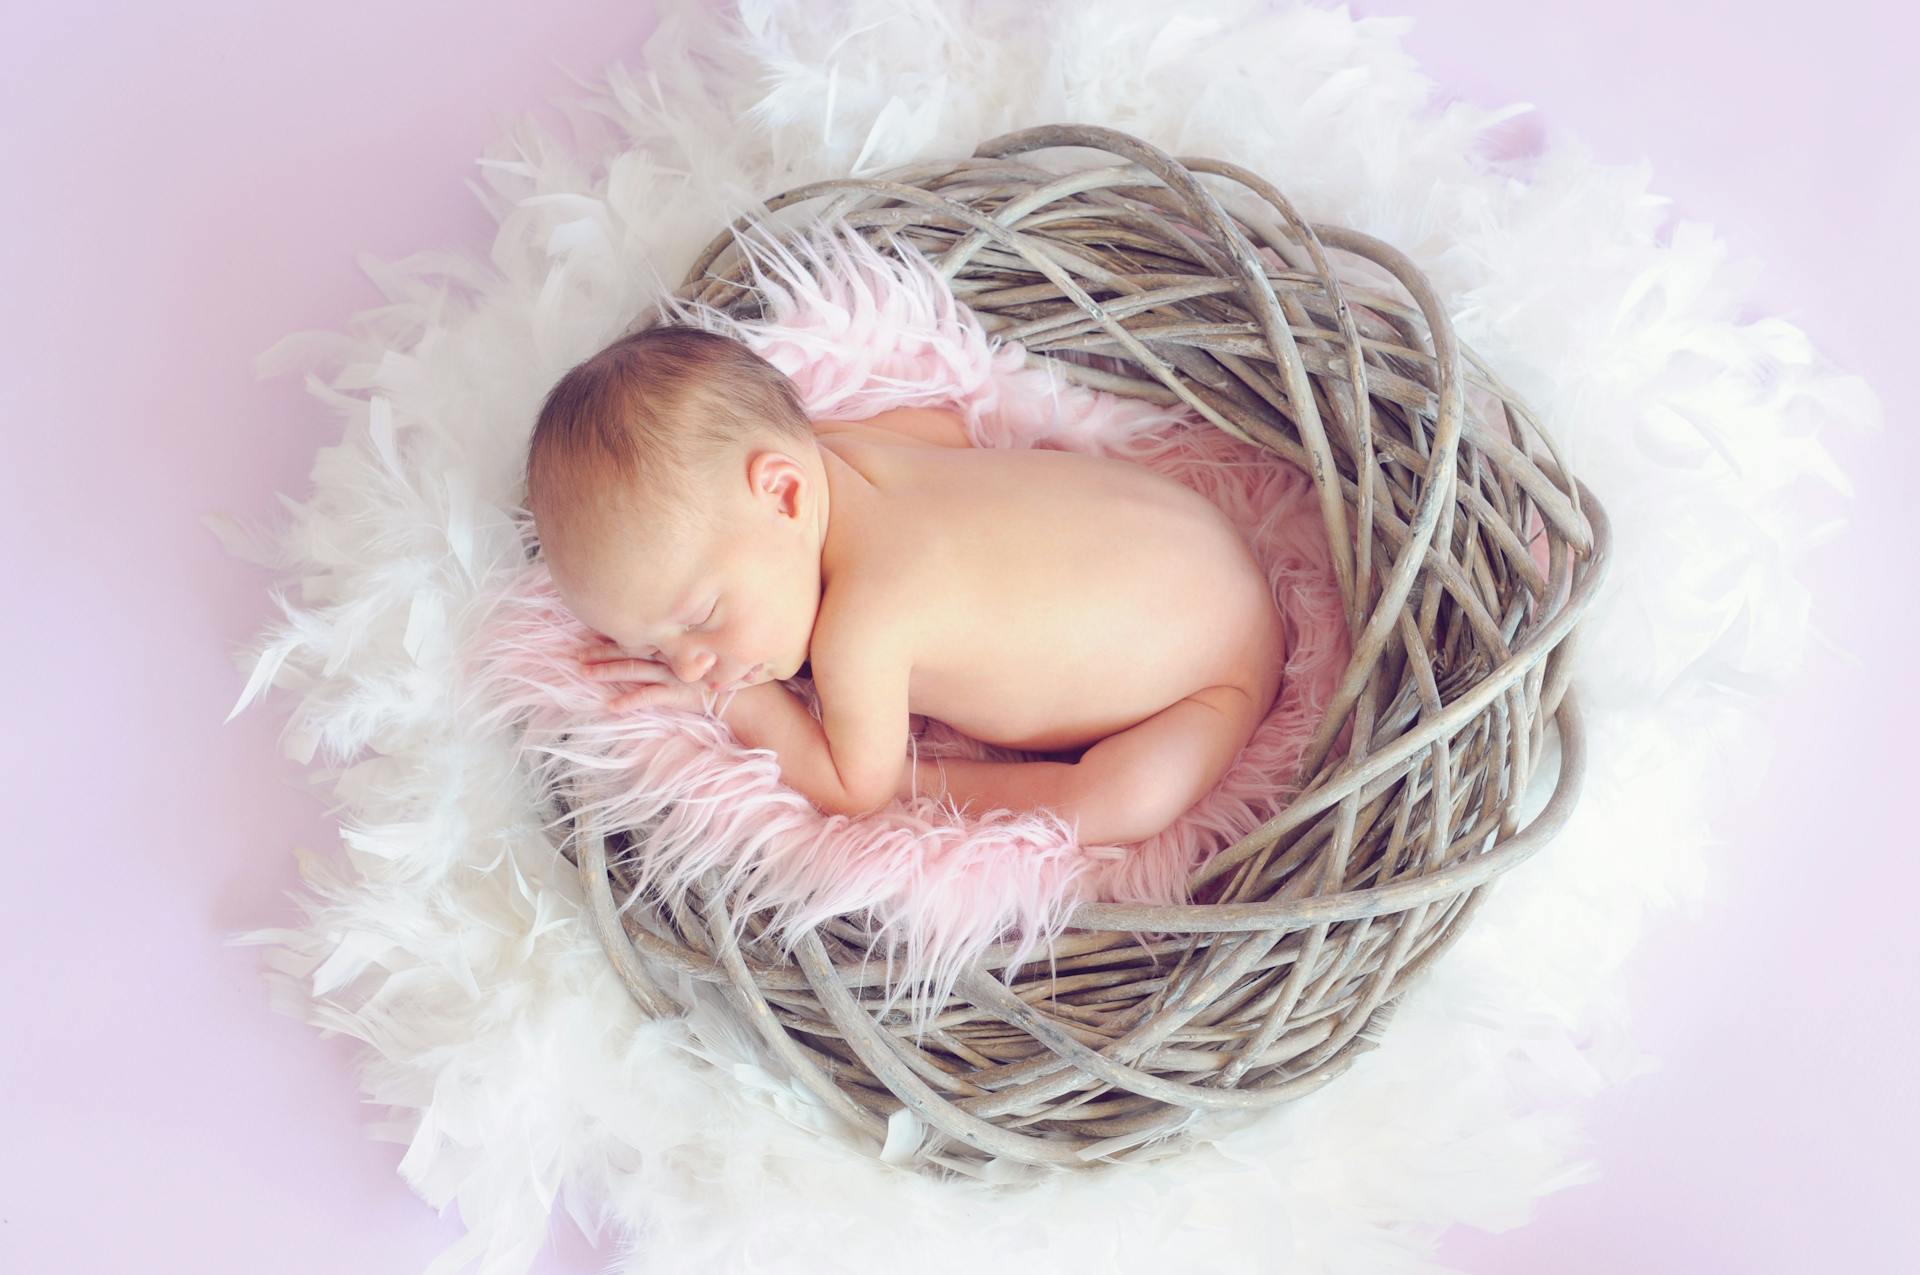 Une petite fille qui vient de naître | Source : Pexels